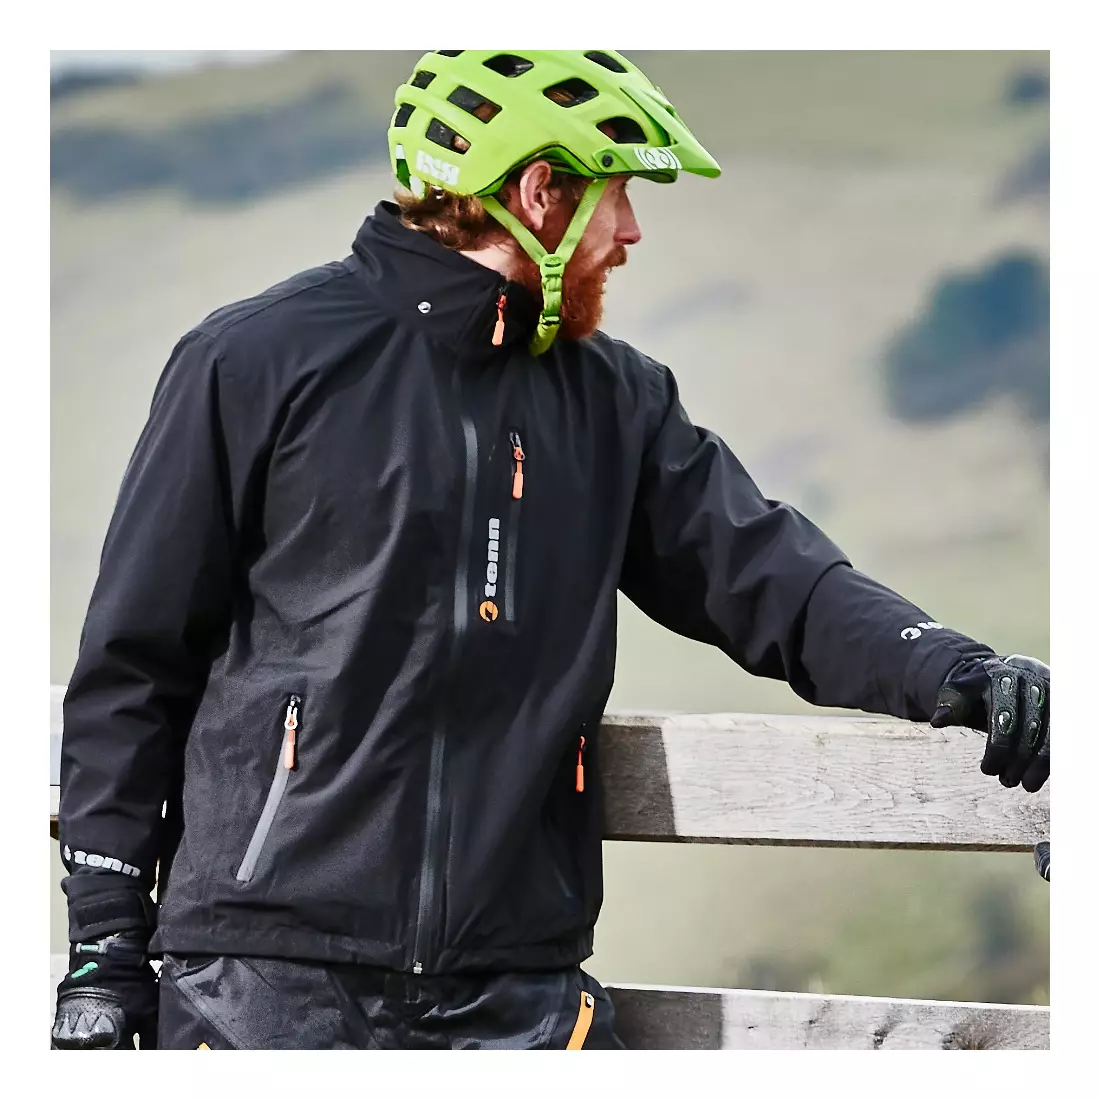 TENN OUTDOORS SWIFT nepromokavá cyklistická bunda s kapucí, černá